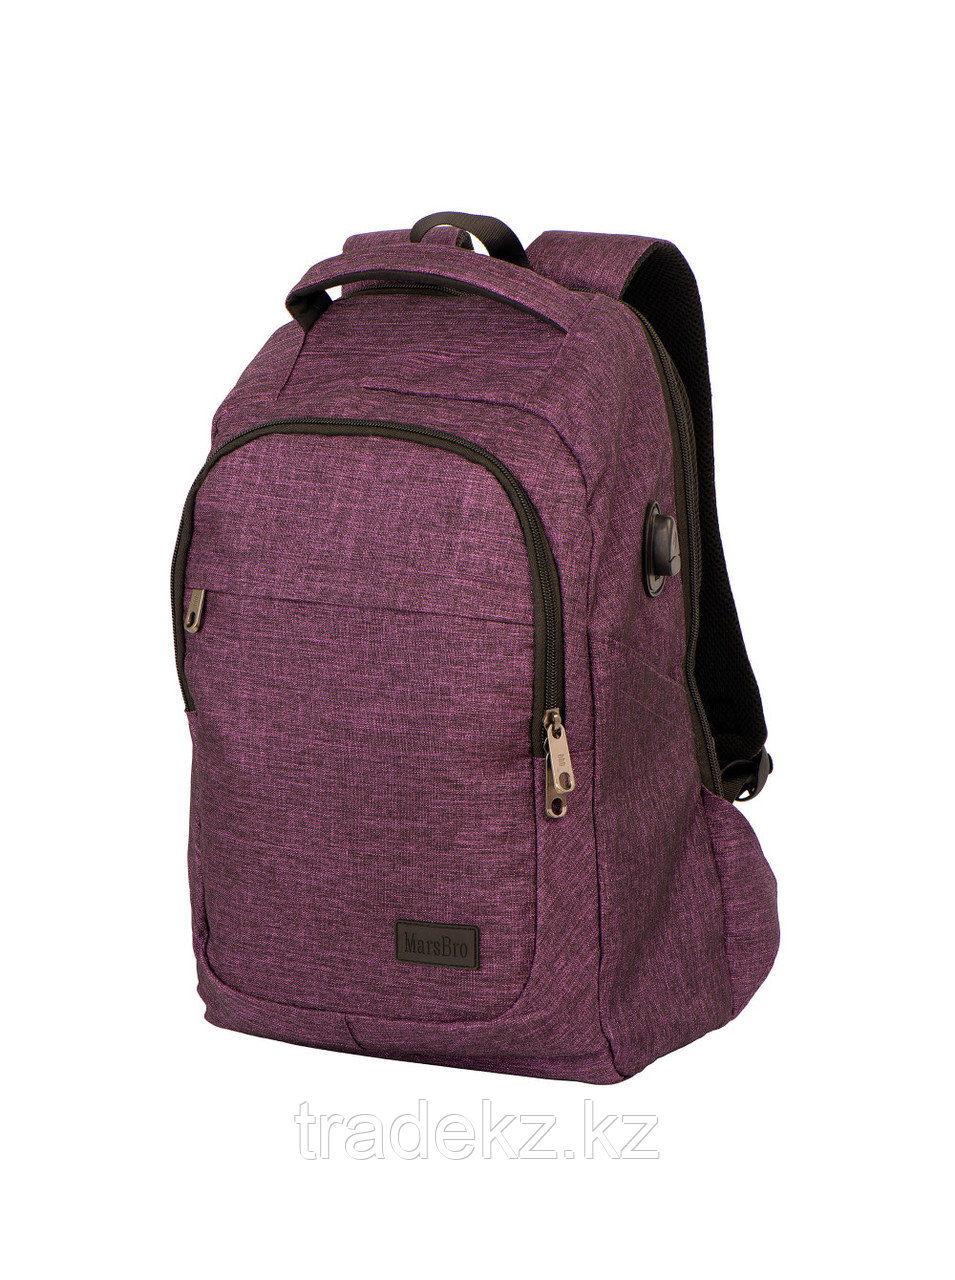 Рюкзак MarsBro Business Laptop, 5335А3, цвет пурпурный, размер 40*30*15, объем 30 л.